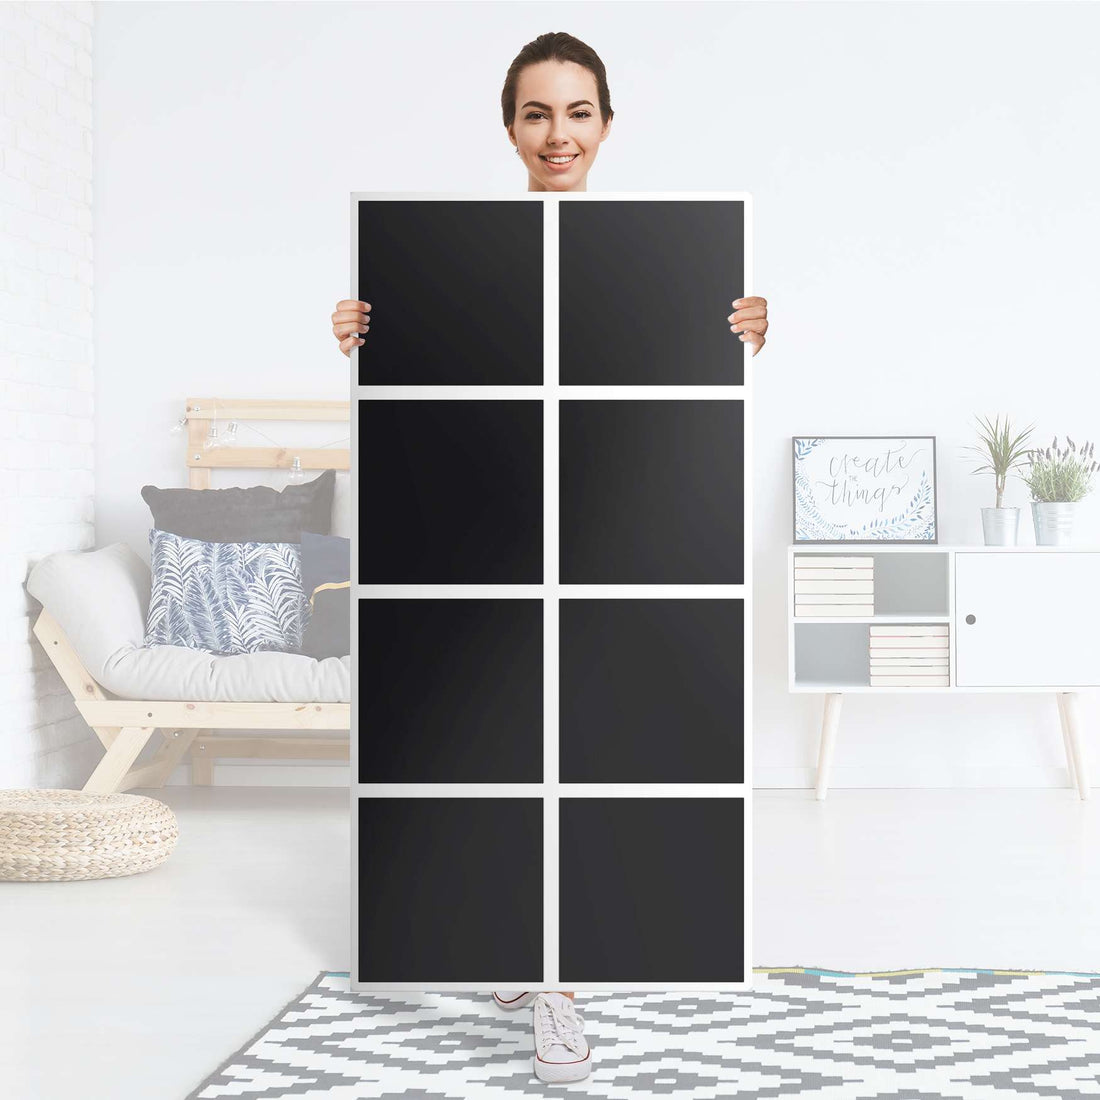 Folie für Möbel Schwarz - IKEA Kallax Regal 8 Türen - Folie